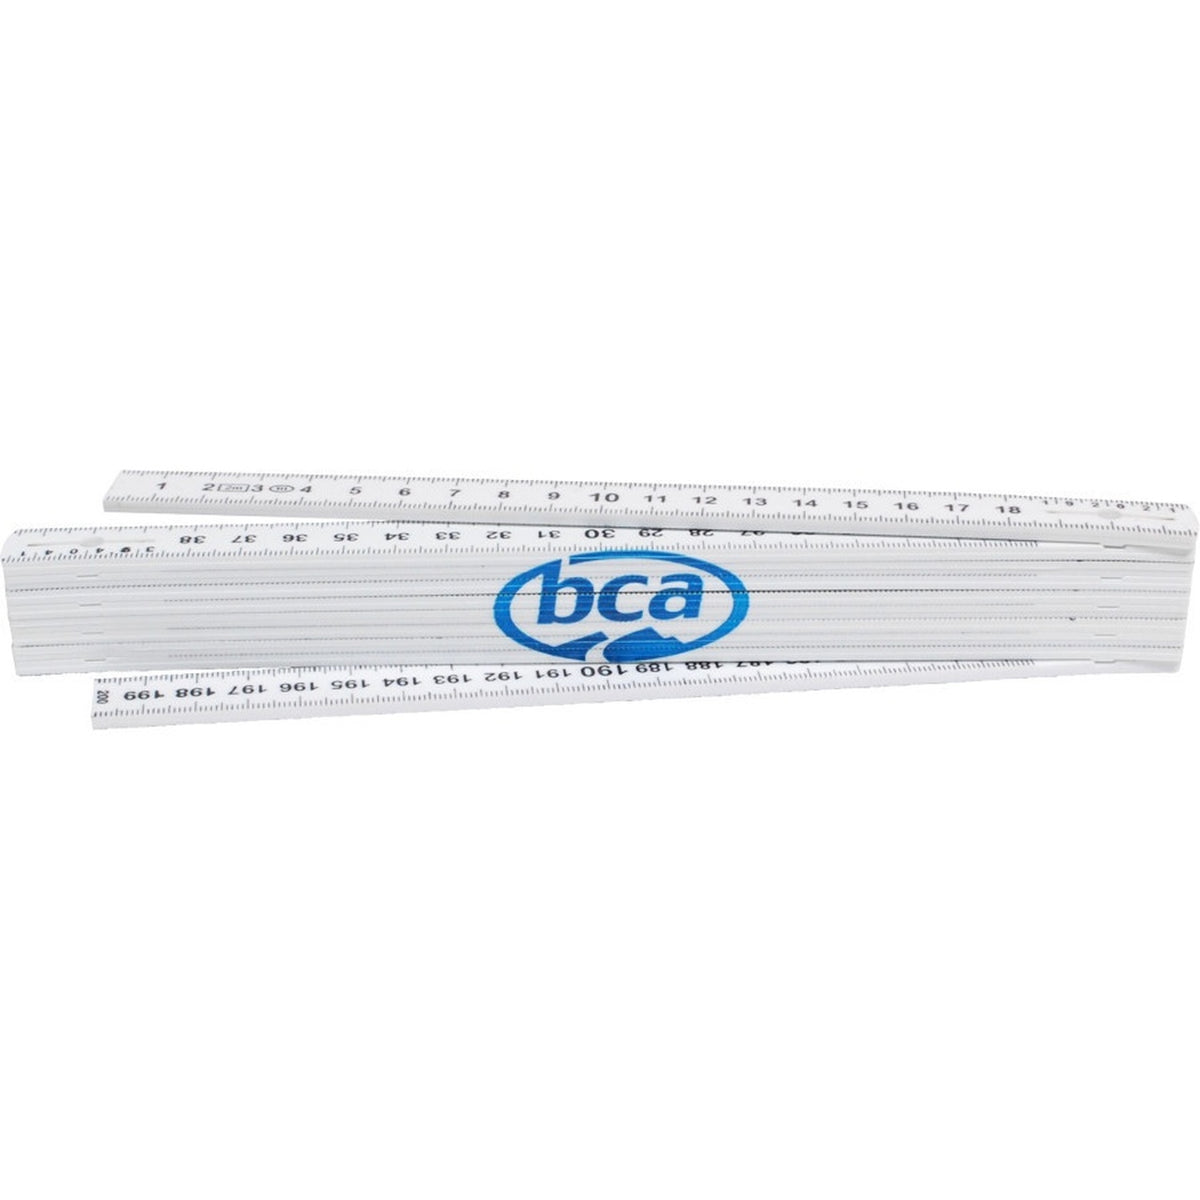 BCA 2 Meter Ruler